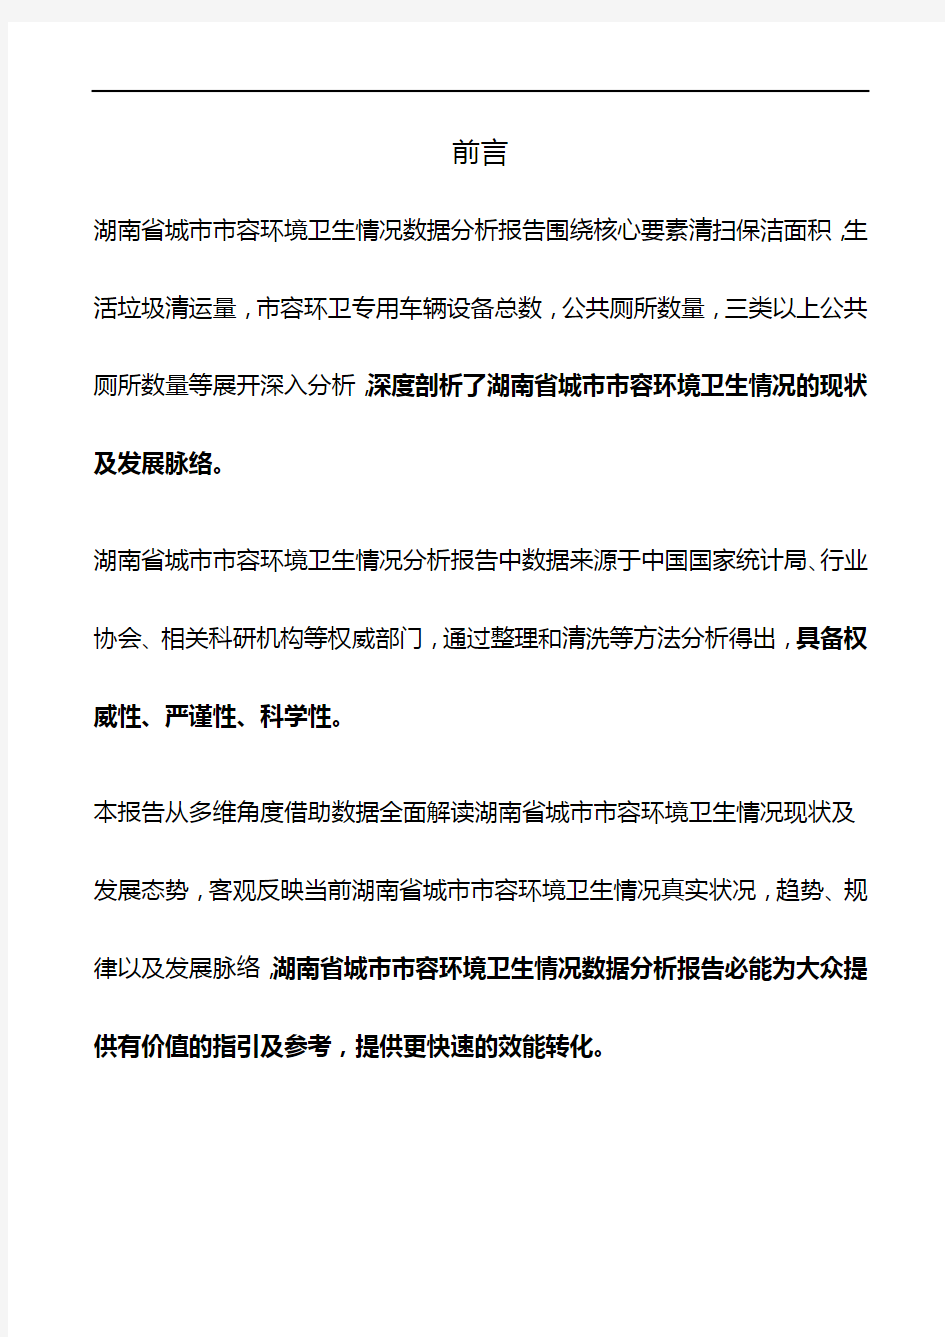 湖南省城市市容环境卫生情况数据分析报告2019版